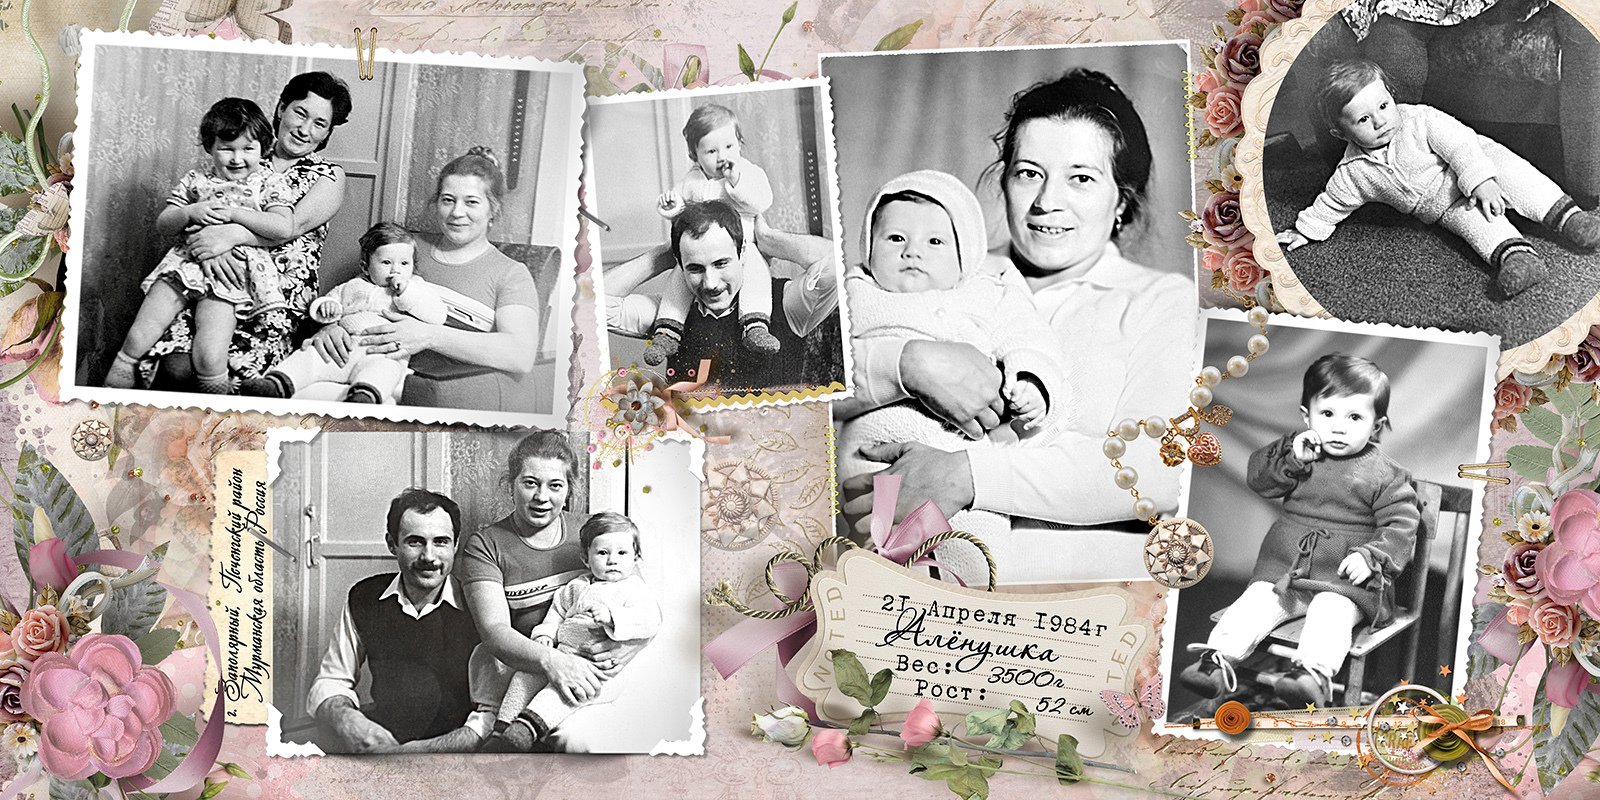 Найдите в семейном альбоме фотографию на которой запечатлено много ваших родственников